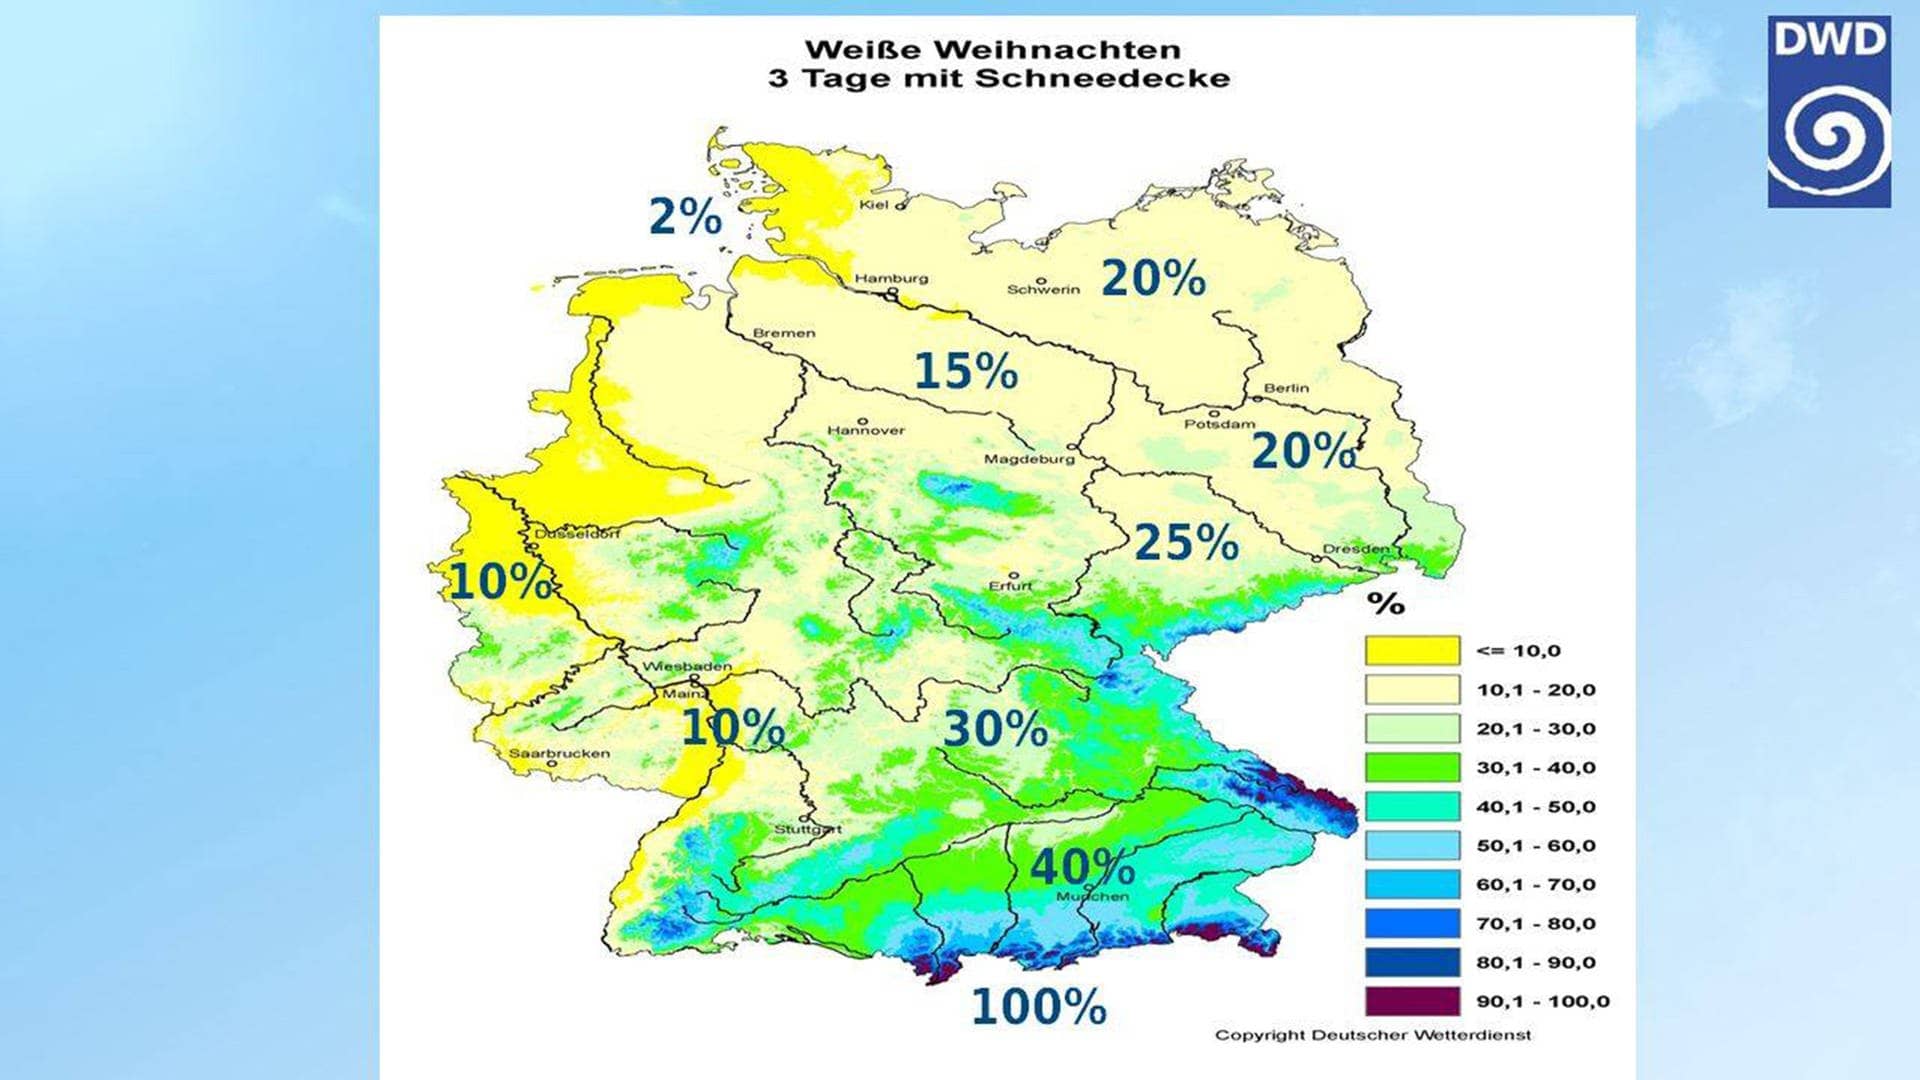 Wahrscheinlichkeit für weiße Weihnachten in Deutschland – ob es 2023 Schnee geben wird zu Heiligabend, geht aus der Karte nicht hervor. (Foto: Deutscher Wetterdienst (DWD))